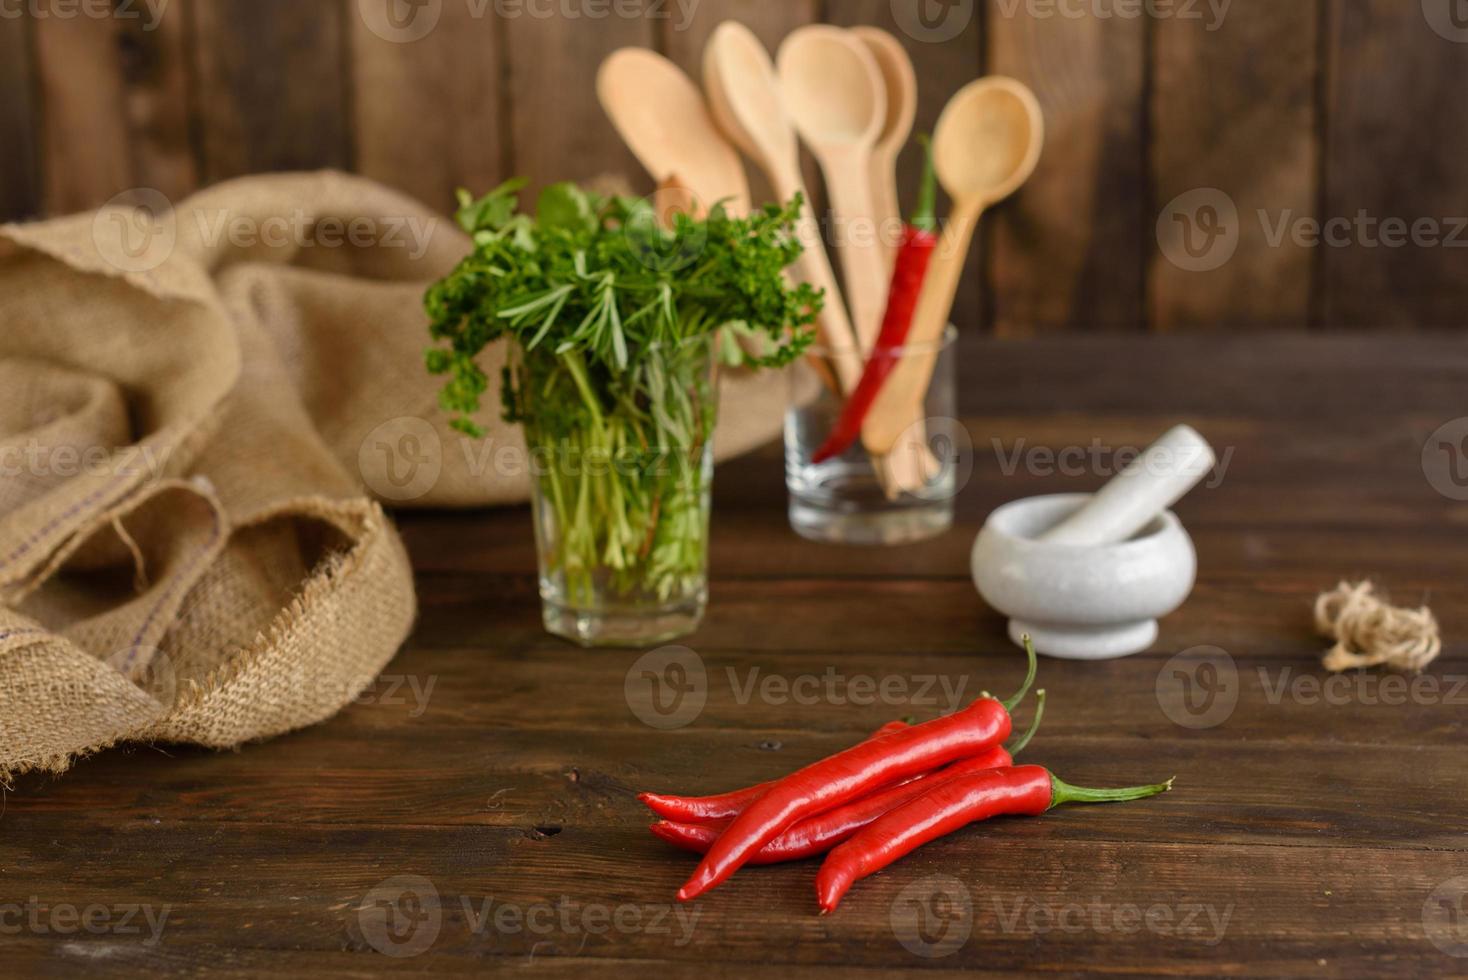 especias y hierbas en la mesa de la cocina antigua. ingredientes de comida y cocina foto